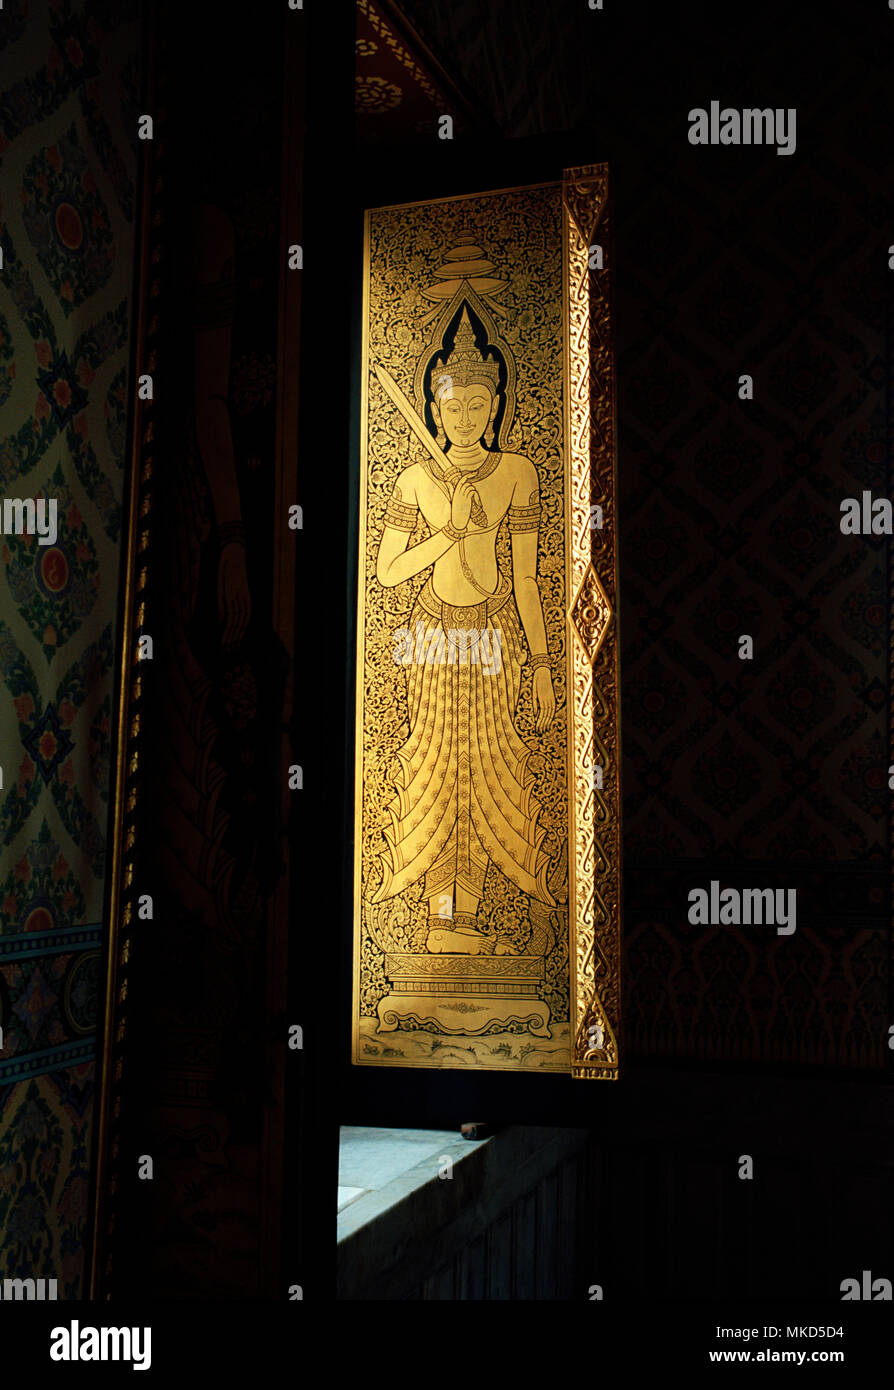 Tailandia - Arte Sacro arte Budista en Wat Traimit en Bangkok en Tailandia en el sudeste de Asia, el Lejano Oriente. El budismo belleza serenidad Historia luz de viaje Foto de stock